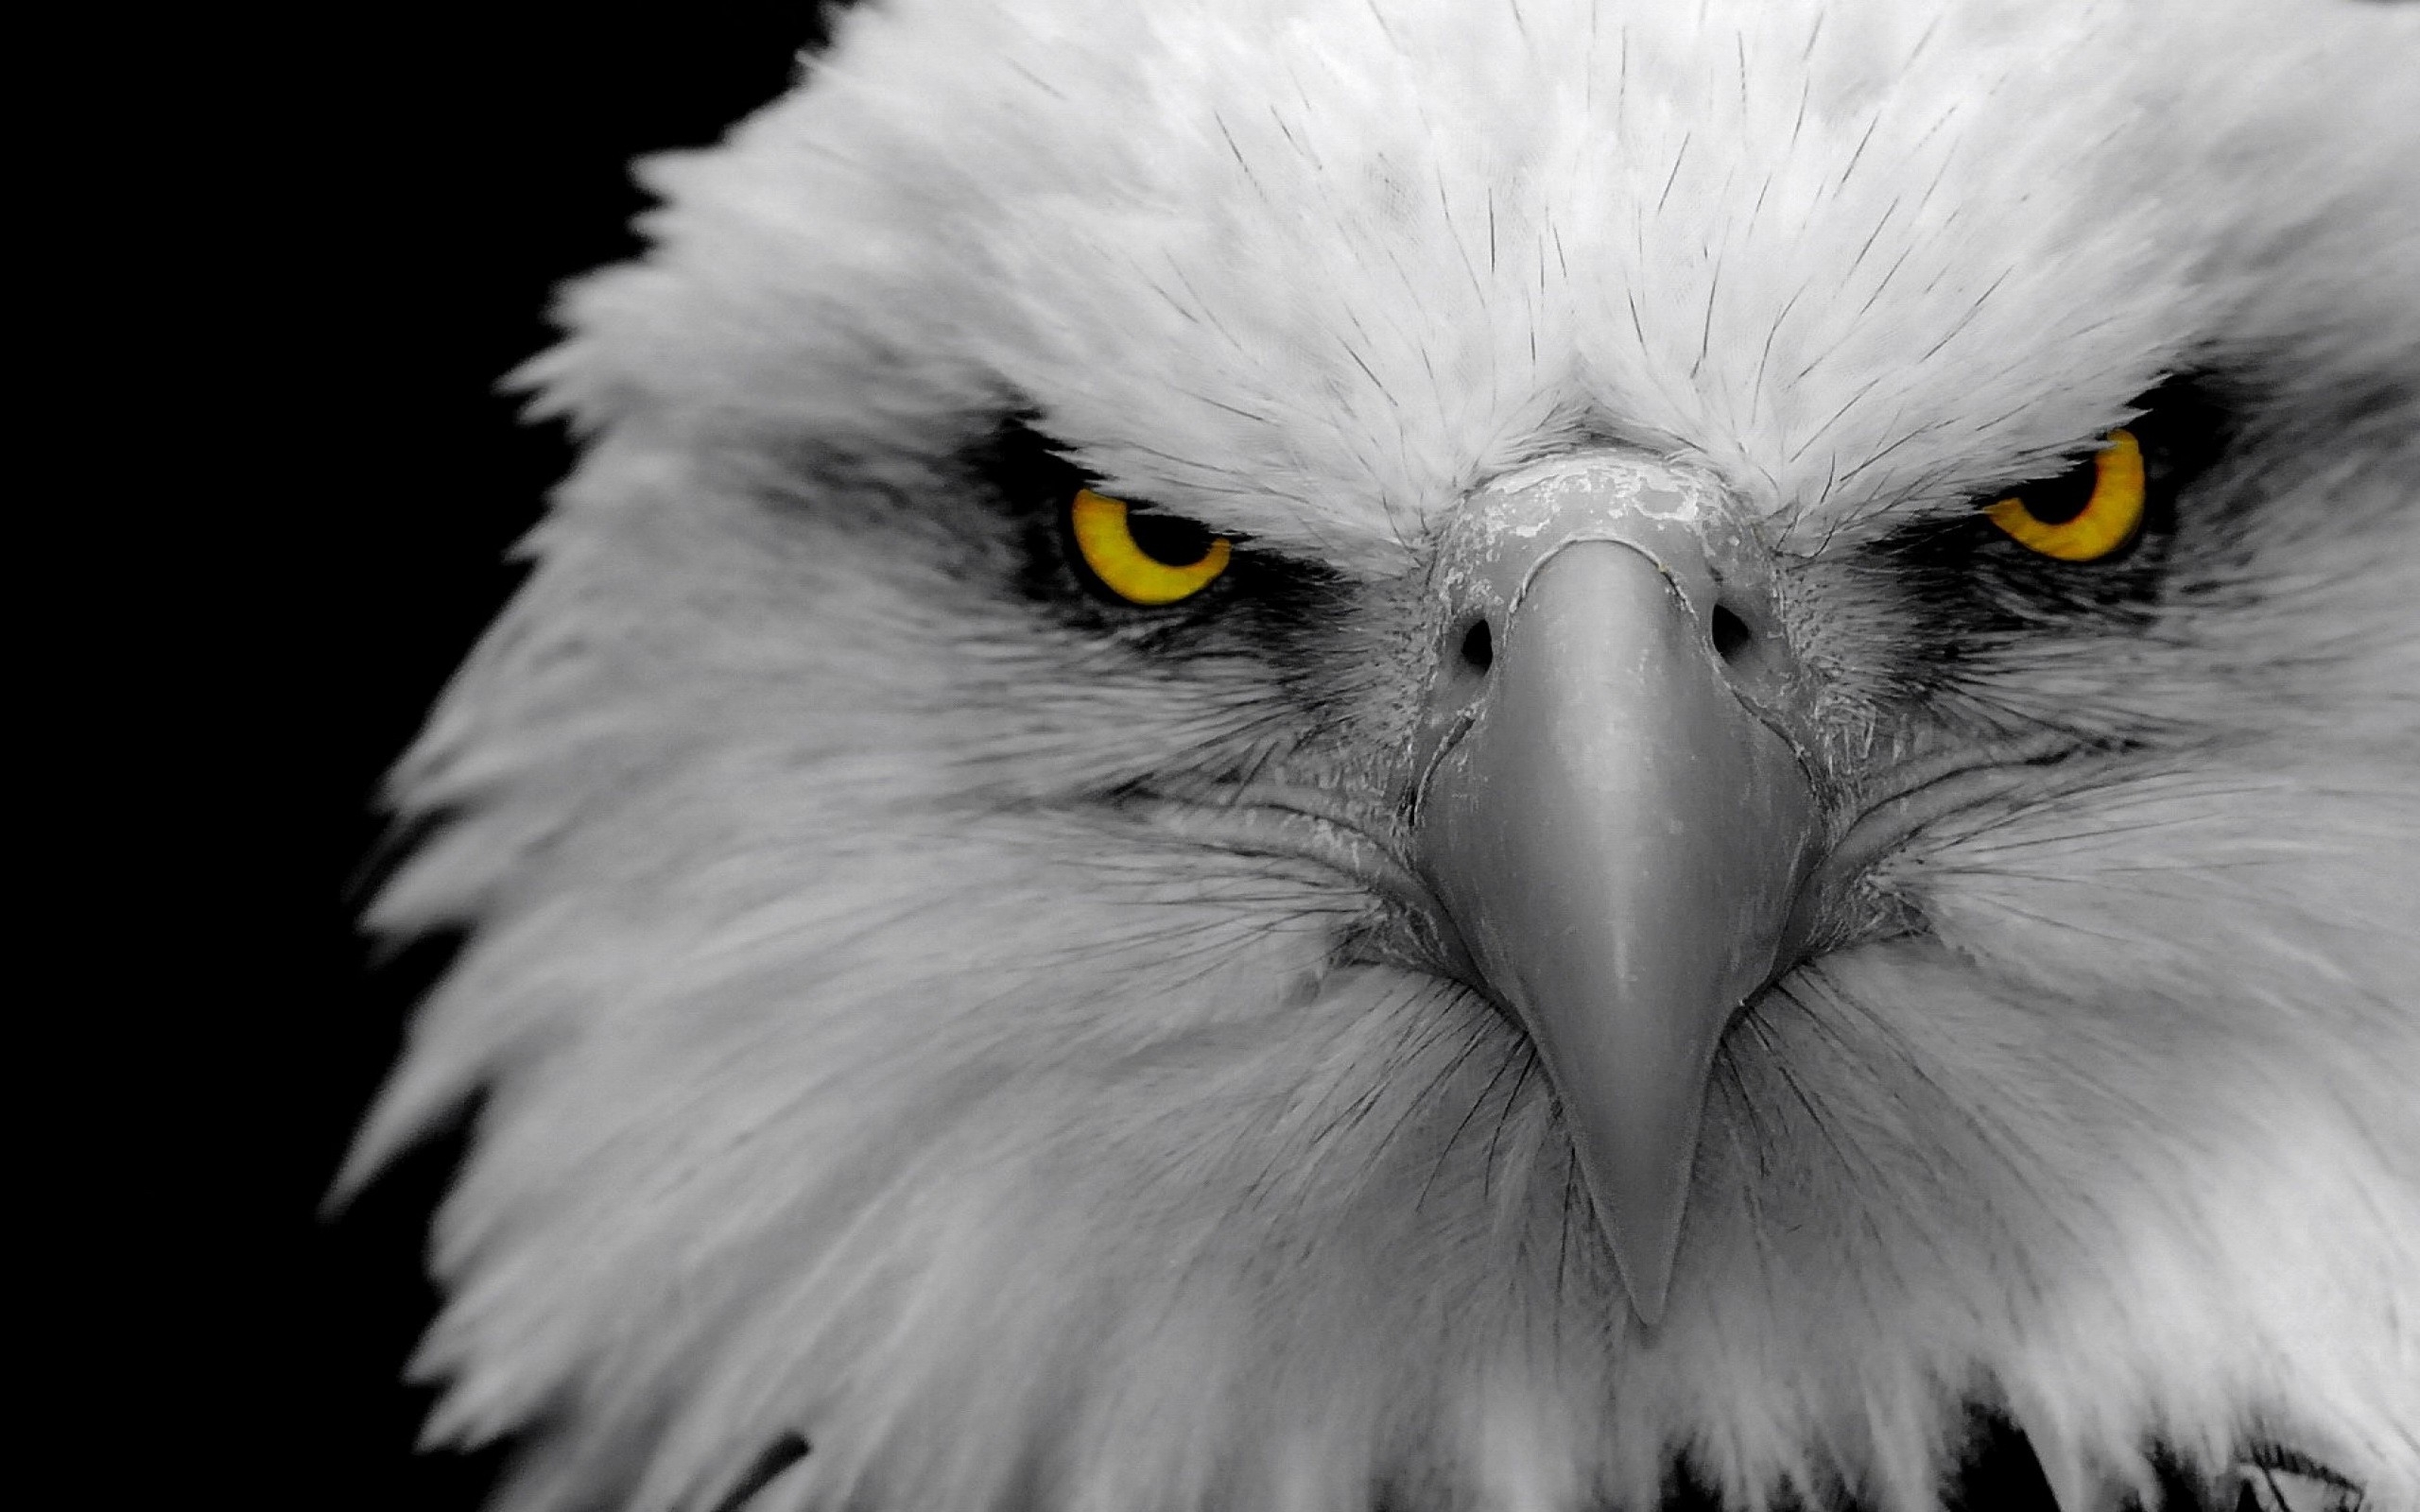 Angry eagle (Đại bàng tức giận) - bức ảnh tràn đầy cảm xúc và sức mạnh của loài chim vương giả này, khiến người xem không thể không bị thu hút và cảm nhận được cơn giận dữ của đại bàng.